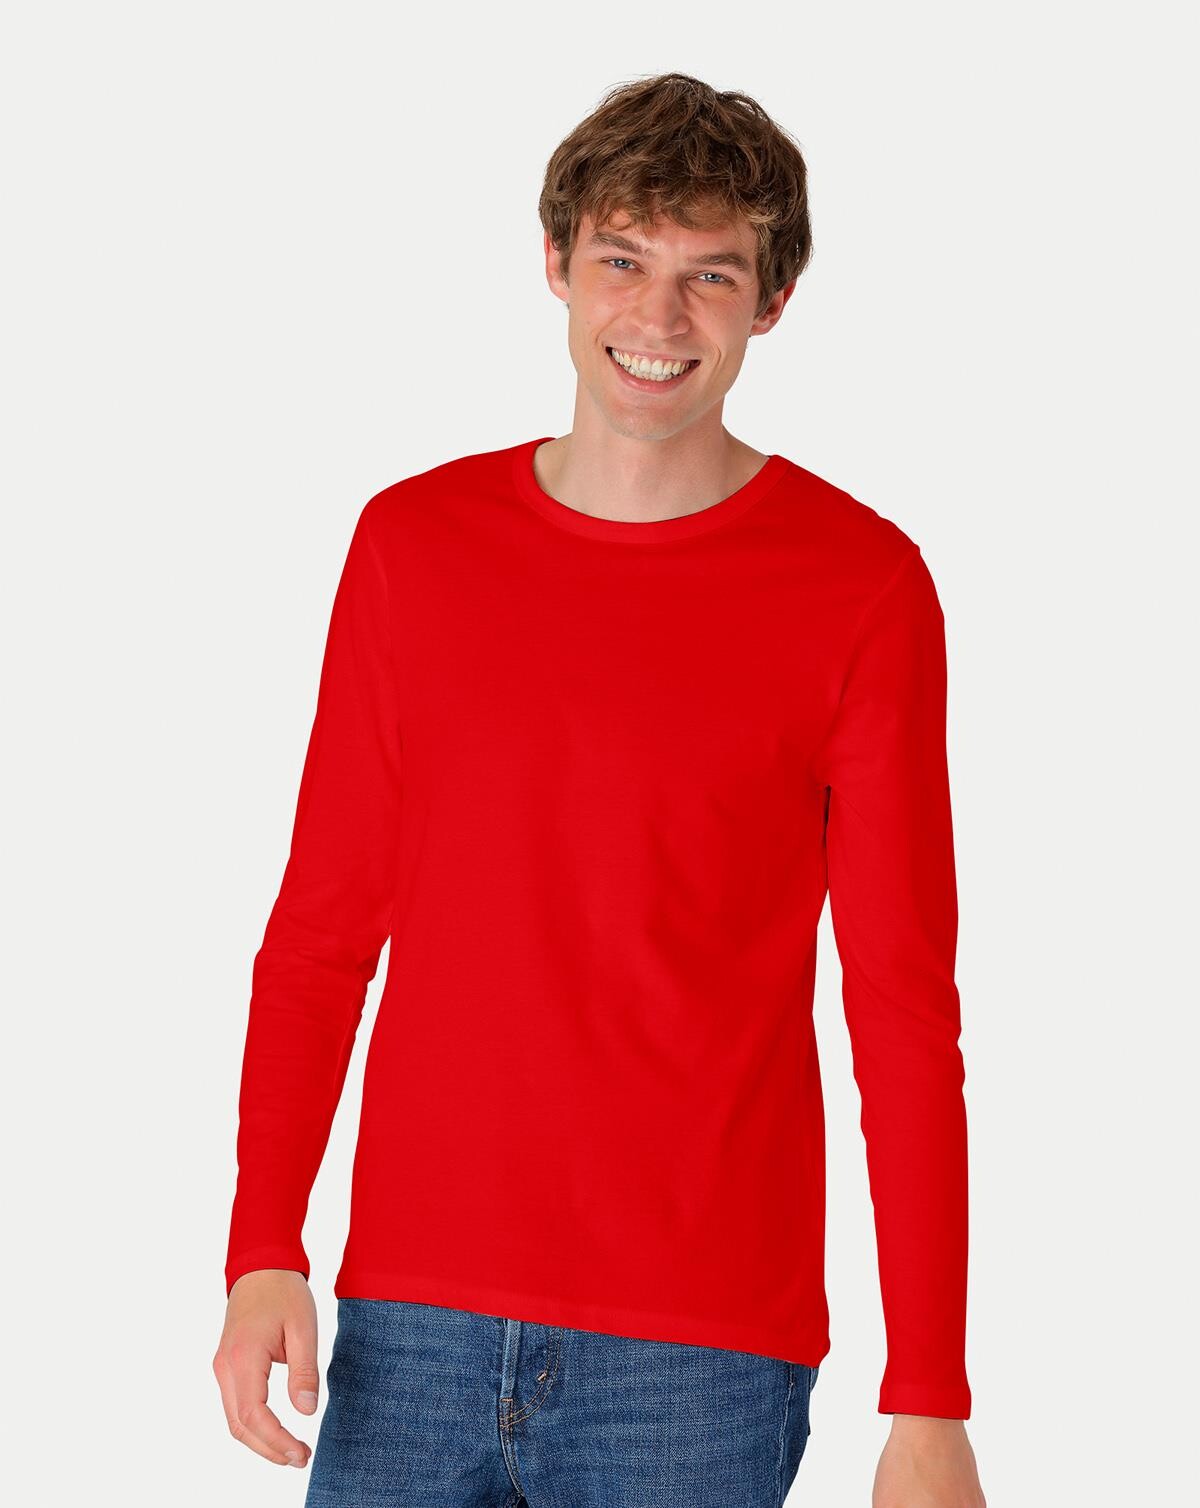 Neutral Organic - Mens Long Sleeve T-shirt (Rød, 3XL)